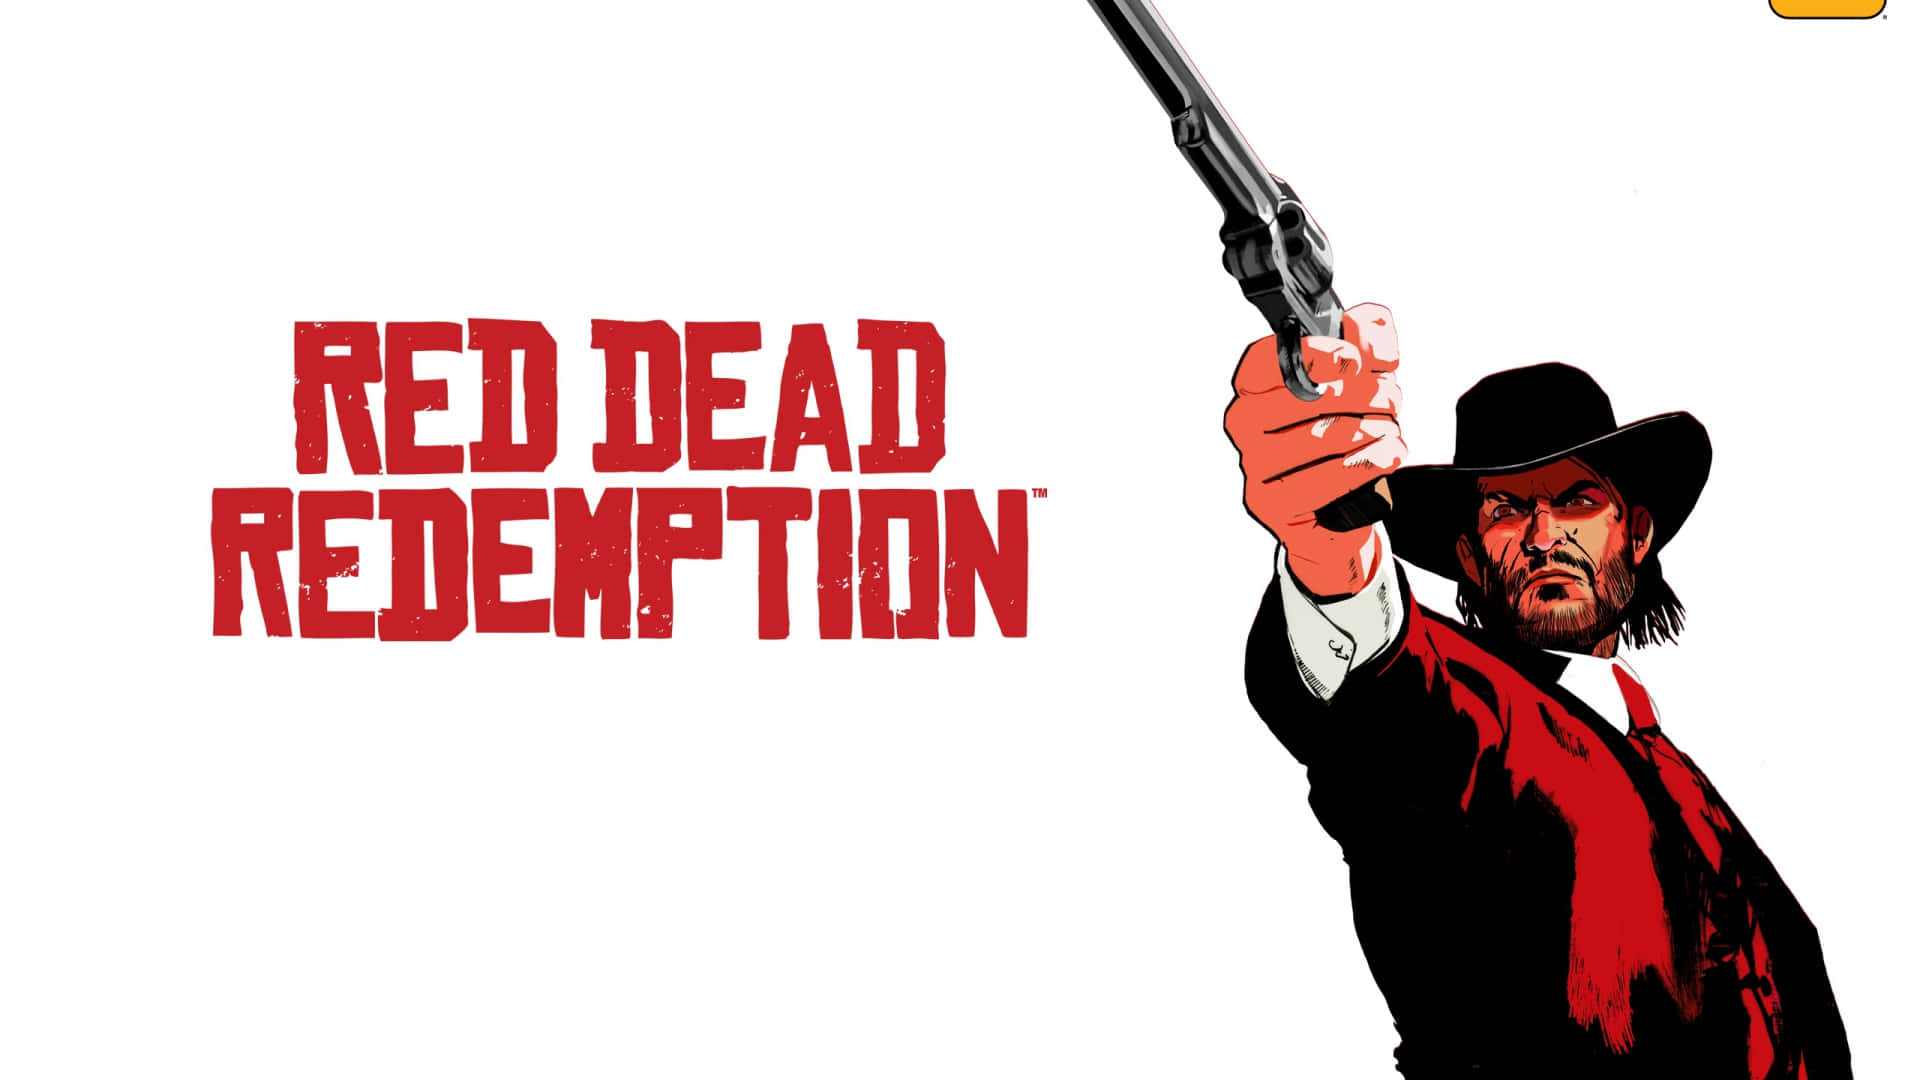 Diseñode Póster Animado 1920x1080 Fondo De Red Dead Redemption 2 En Rojo